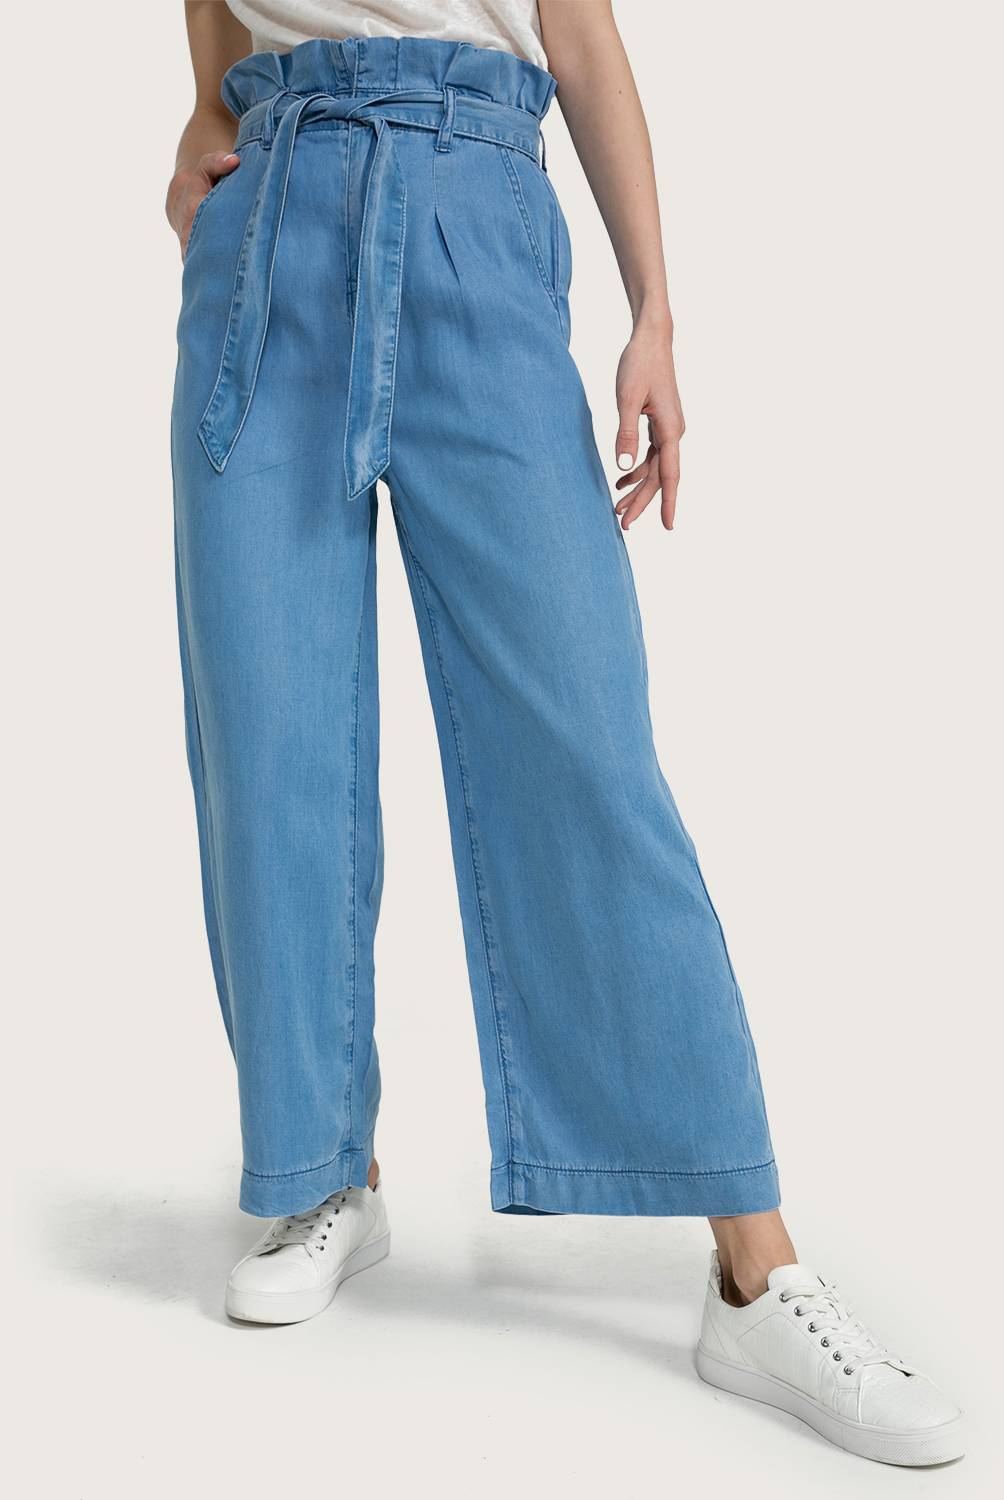 BASEMENT - Jeans Tencel Mujer